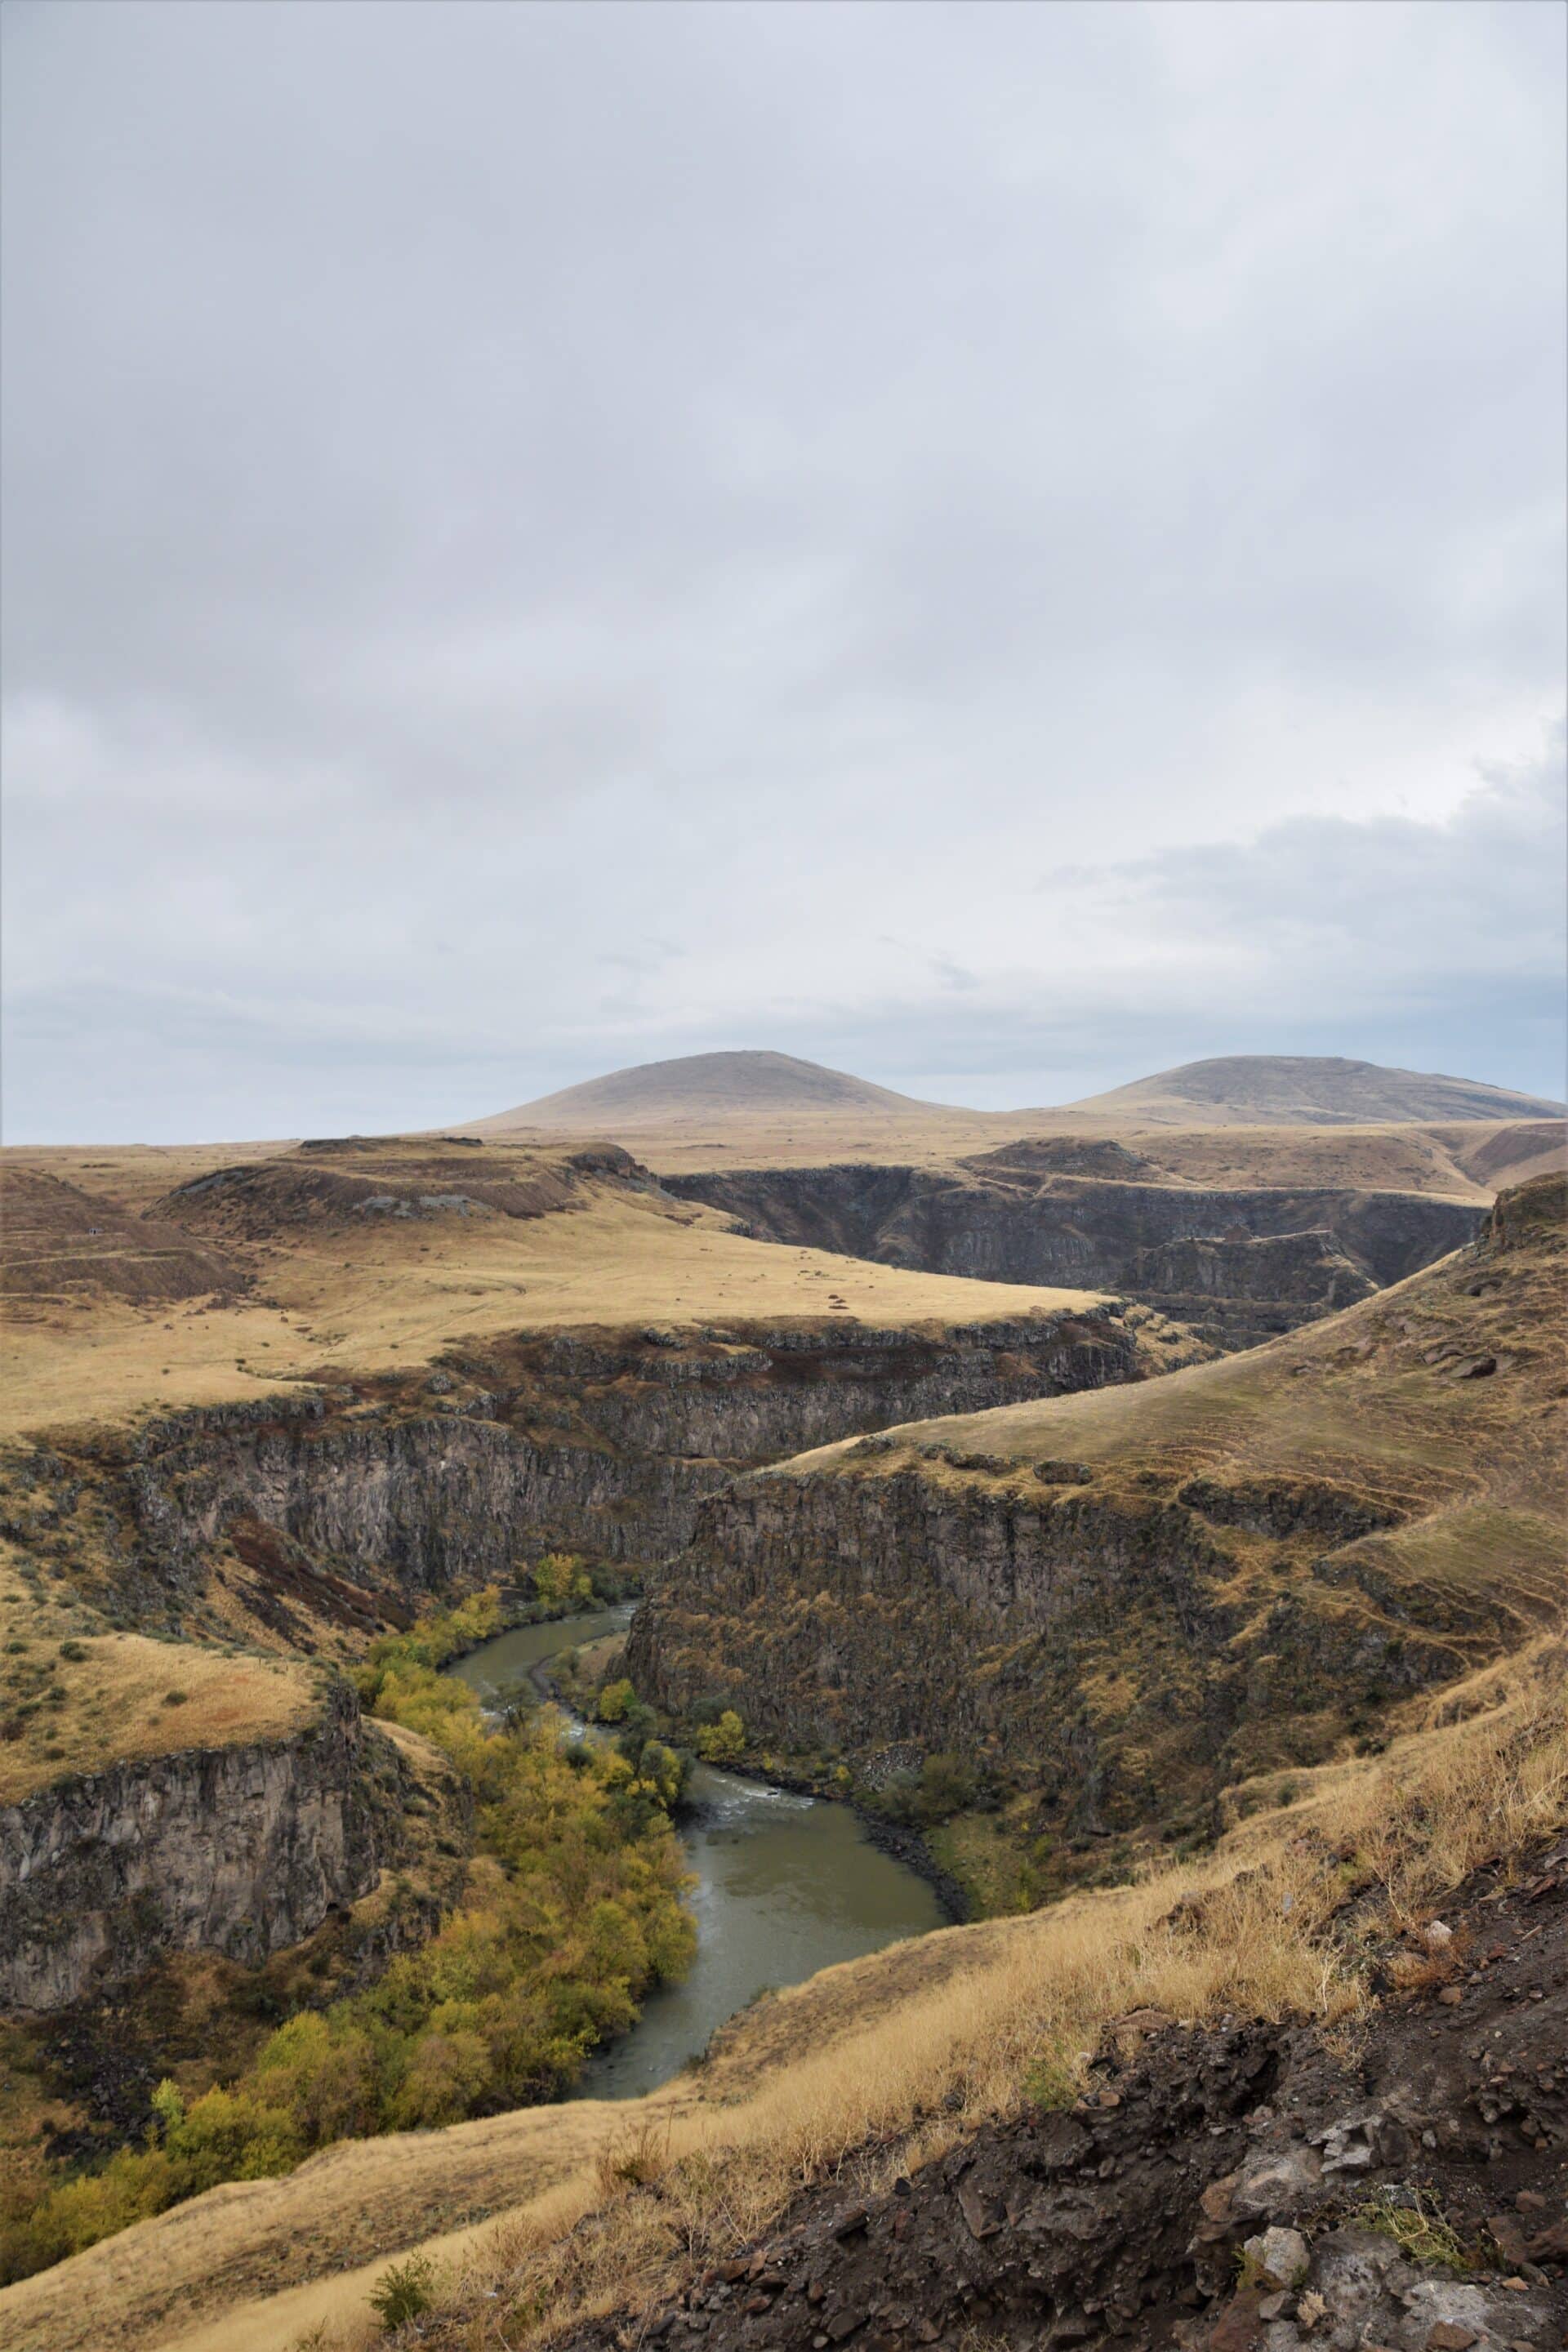 a canyon cuts through a barren plain separating Turkey and Armenia